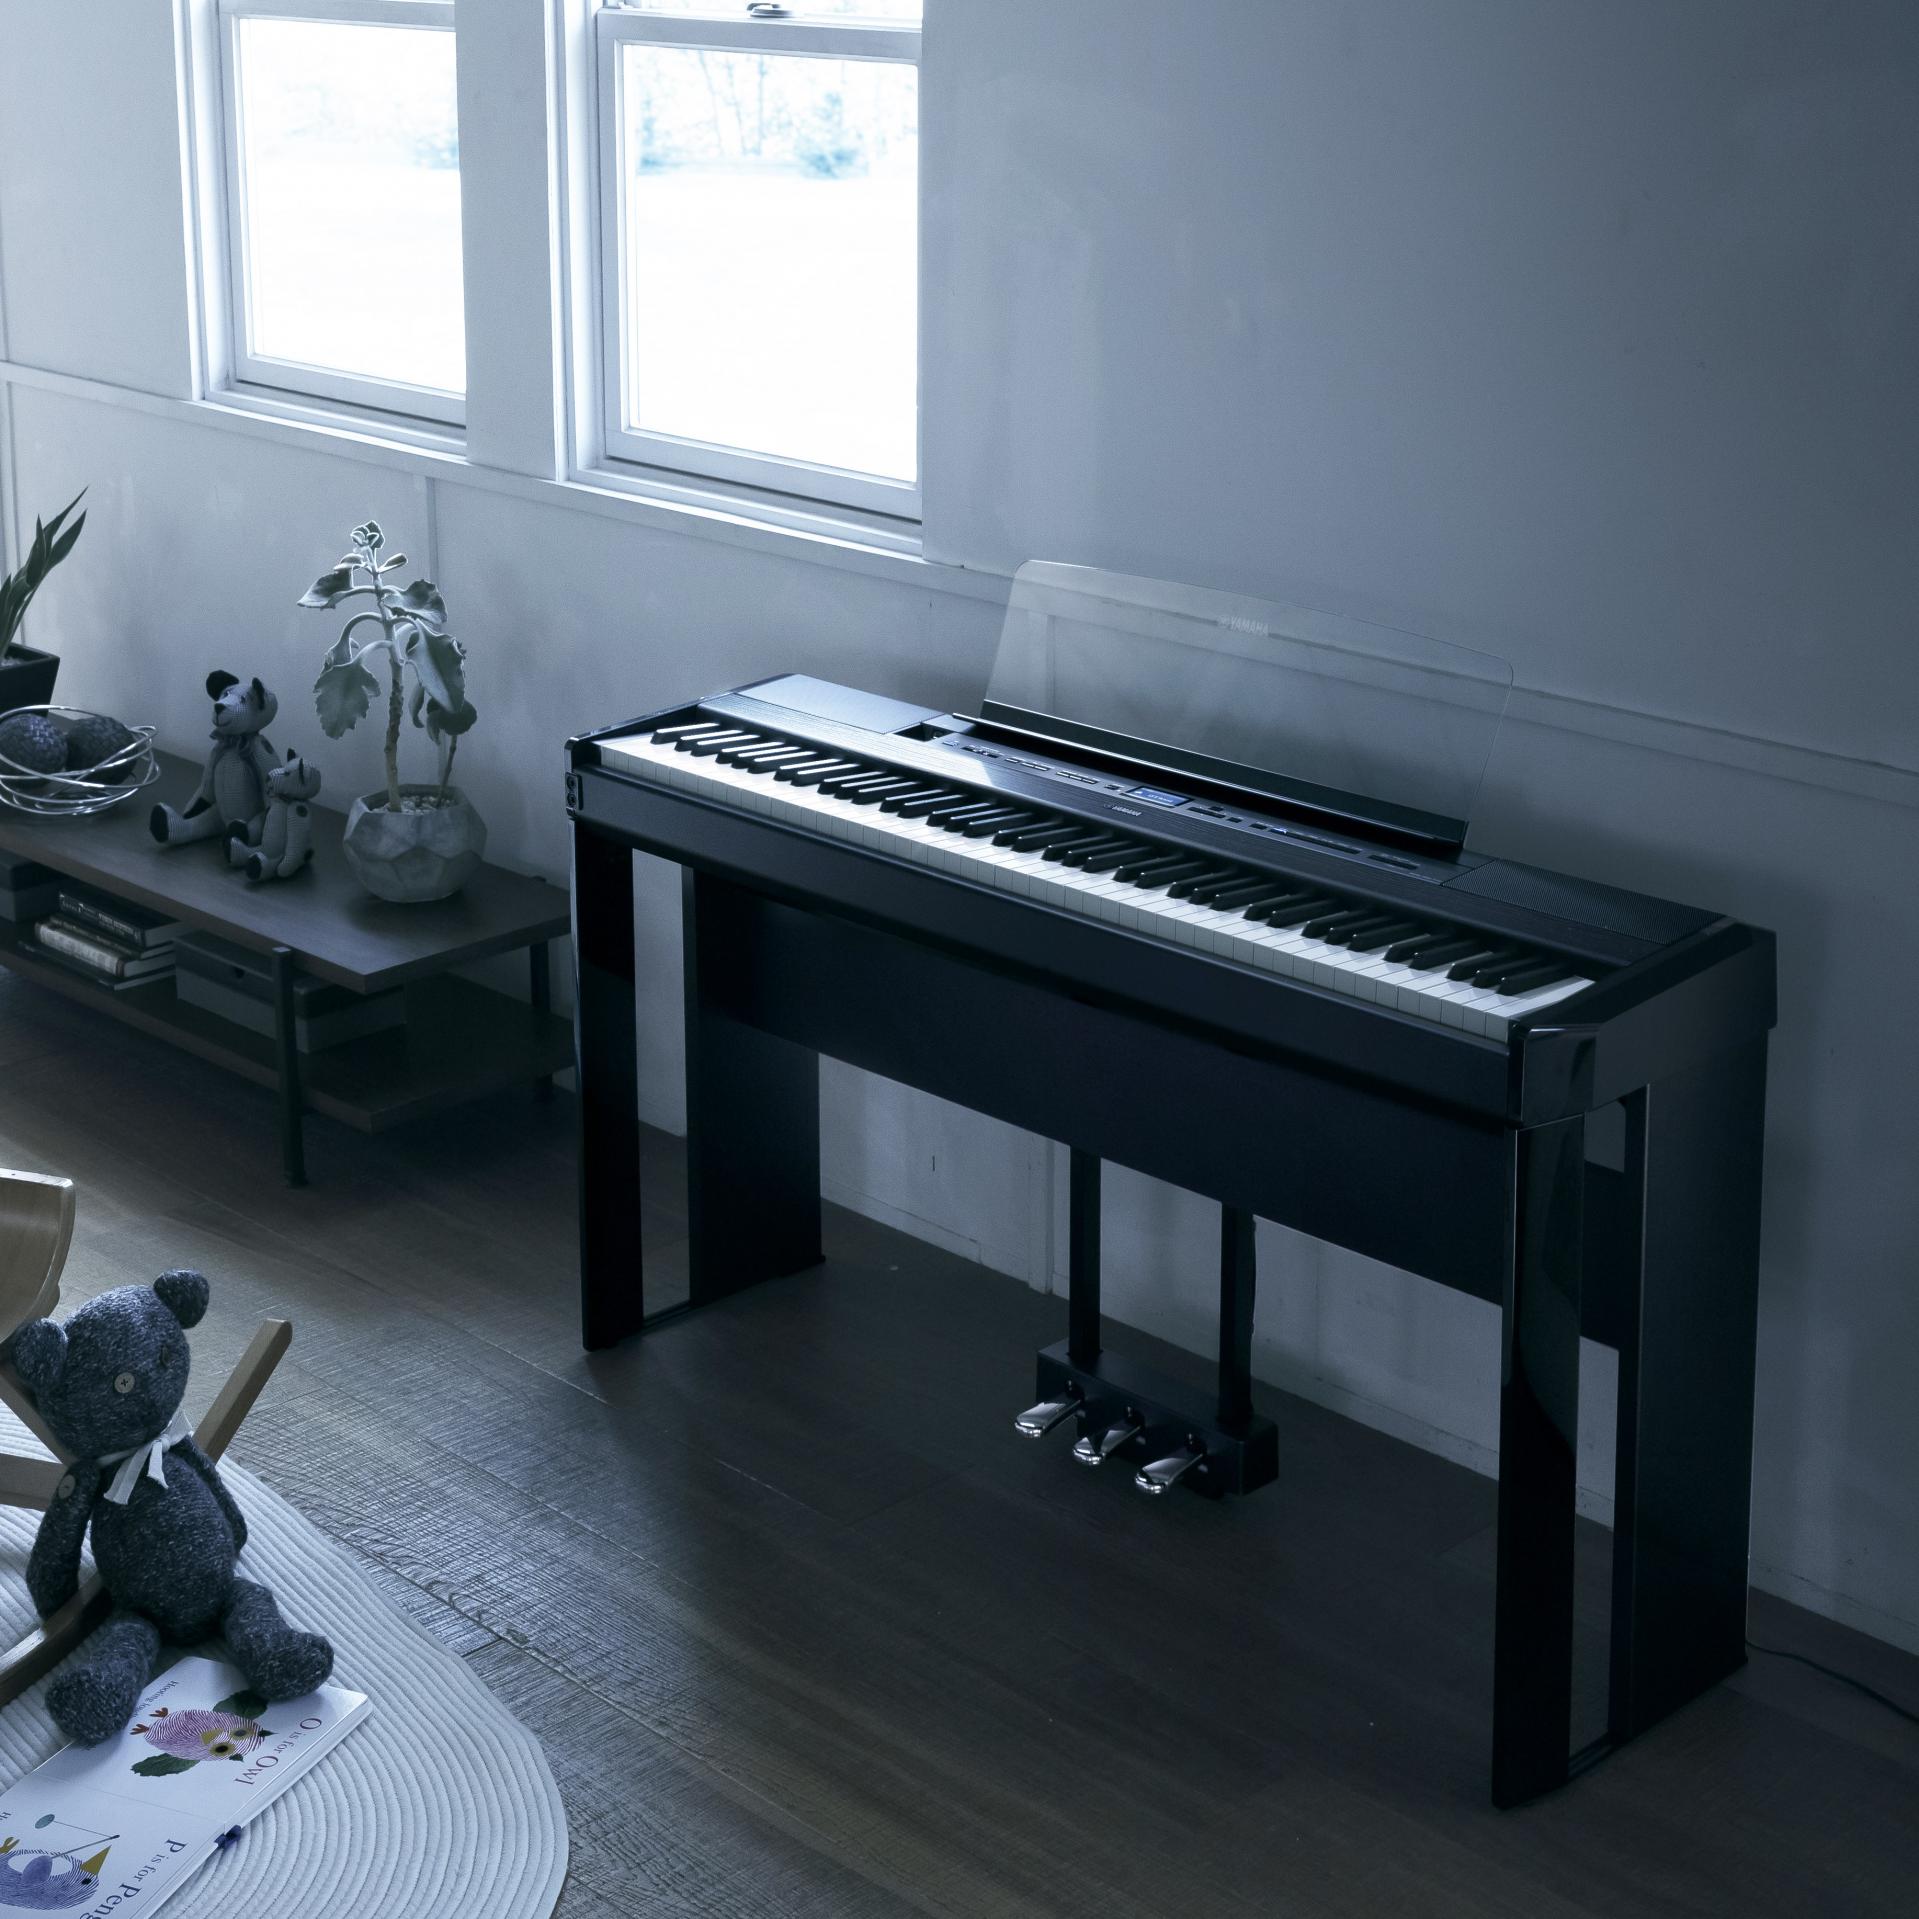 Yamaha Piano numérique à 88 touches avec haut-parleurs P-515 - Blanc